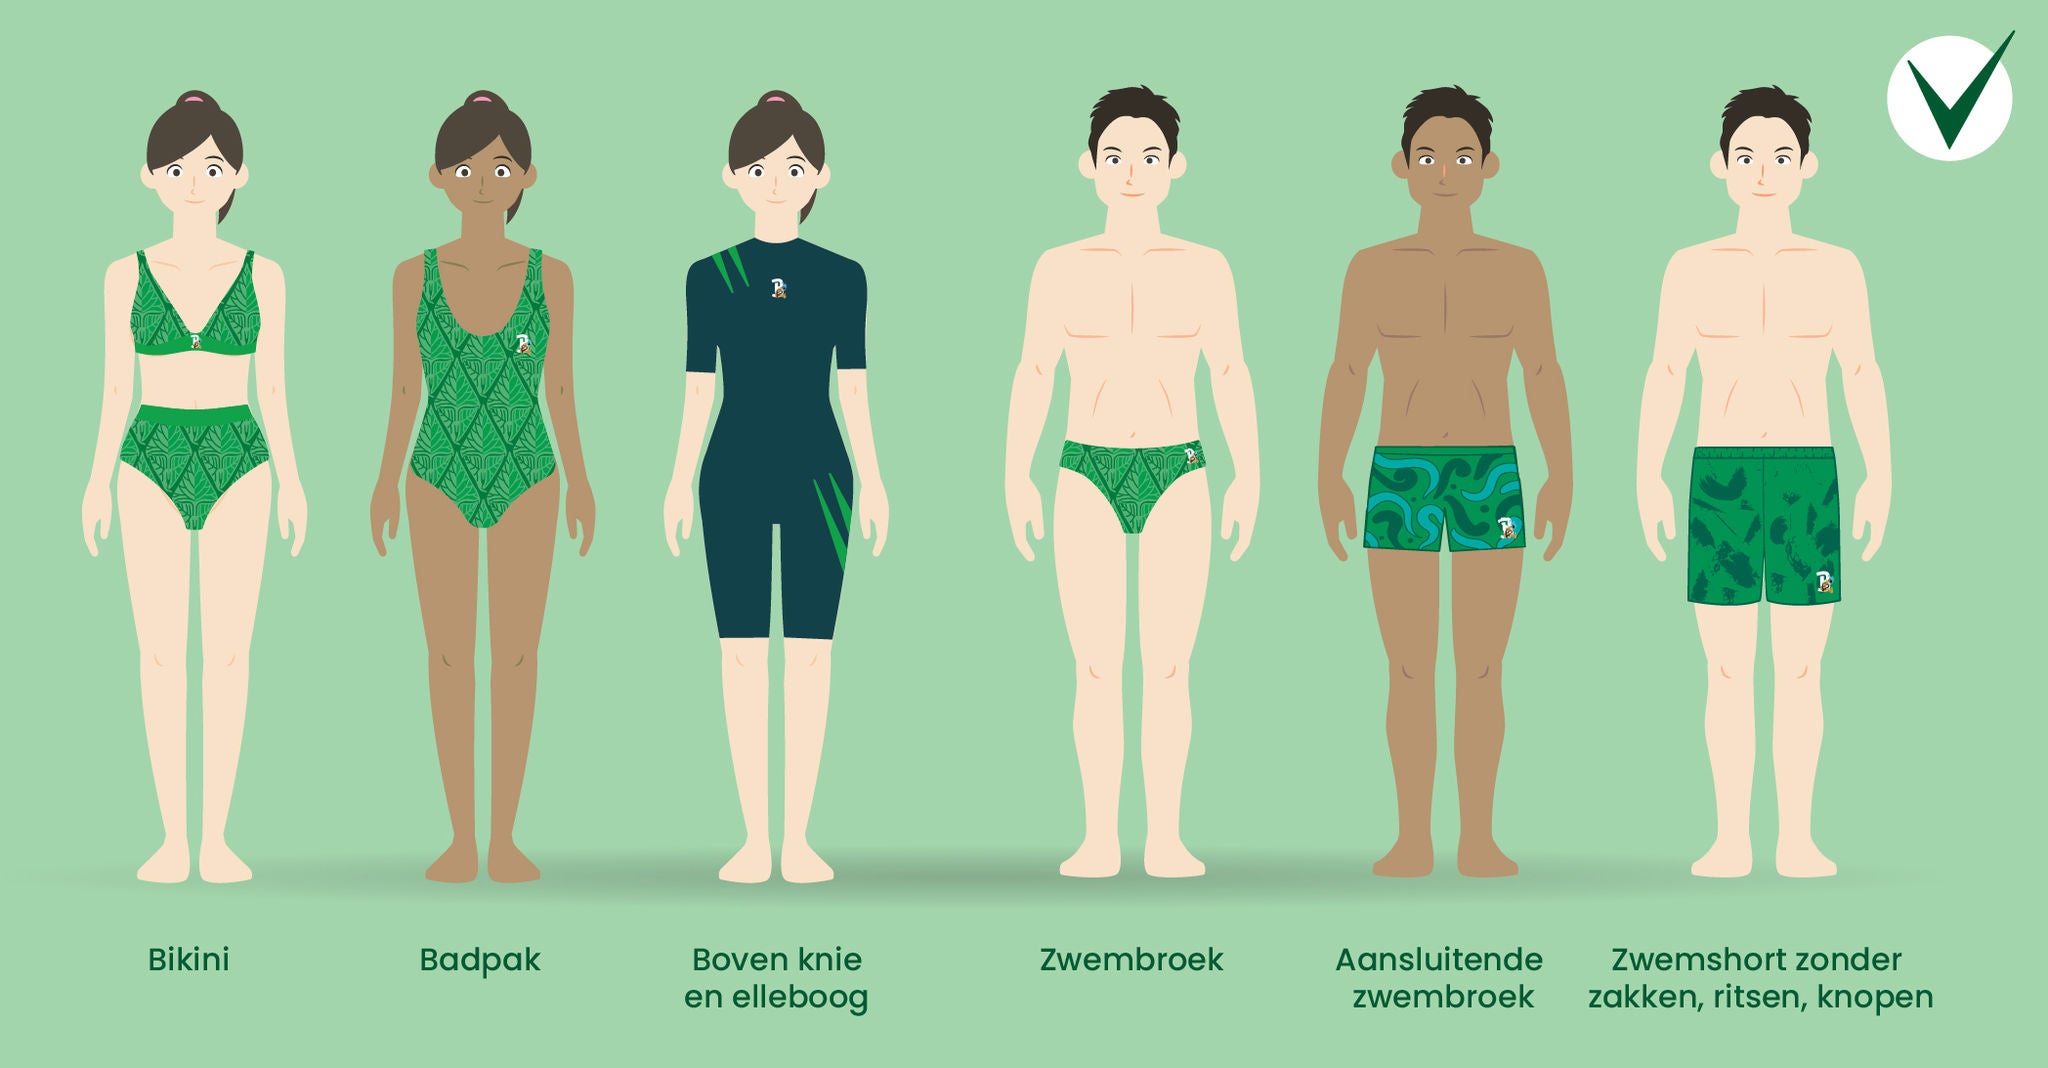 Toegelaten badkleding: bikini, badpak, boven knie en elleboog, zwembroek, aansluitende zwembroek, zwemshort zonder zakken, ritsen en knopen.